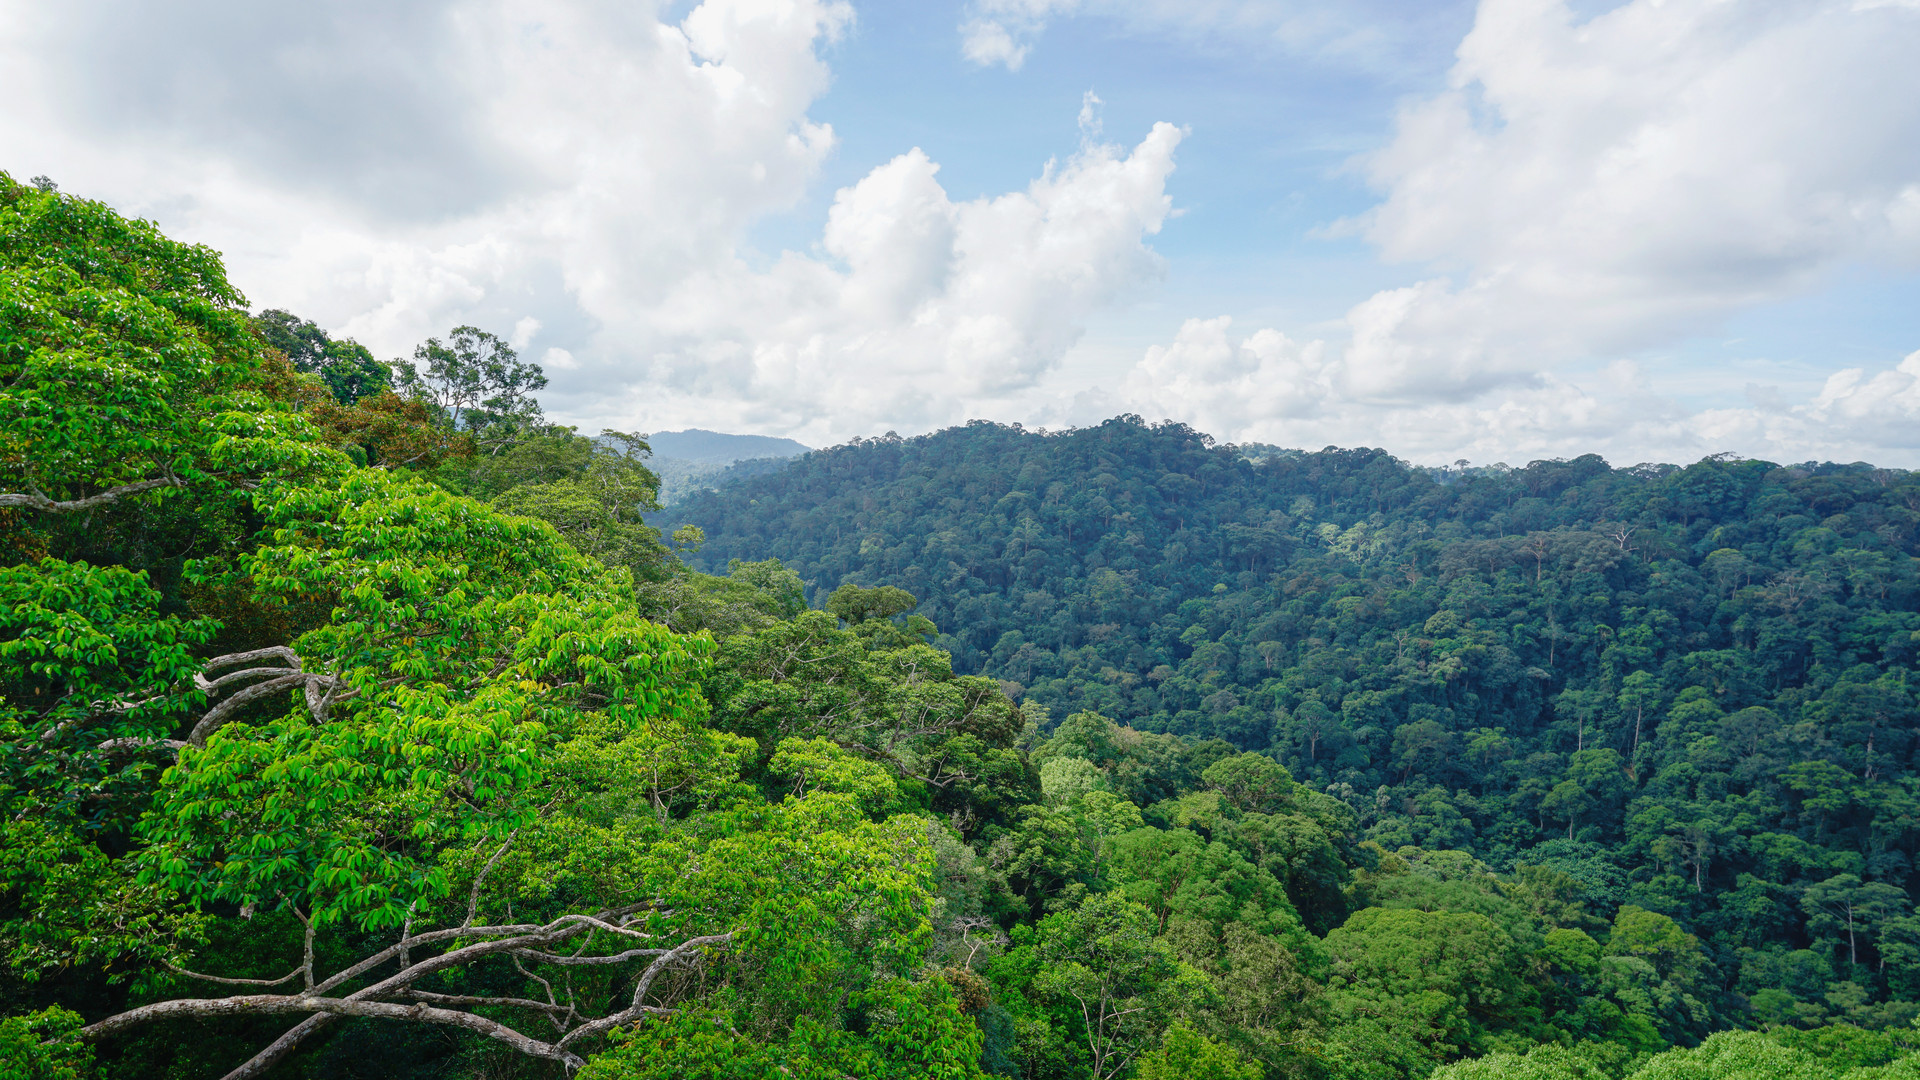 地球之肺,亚马逊雨林还能被摧残多少年